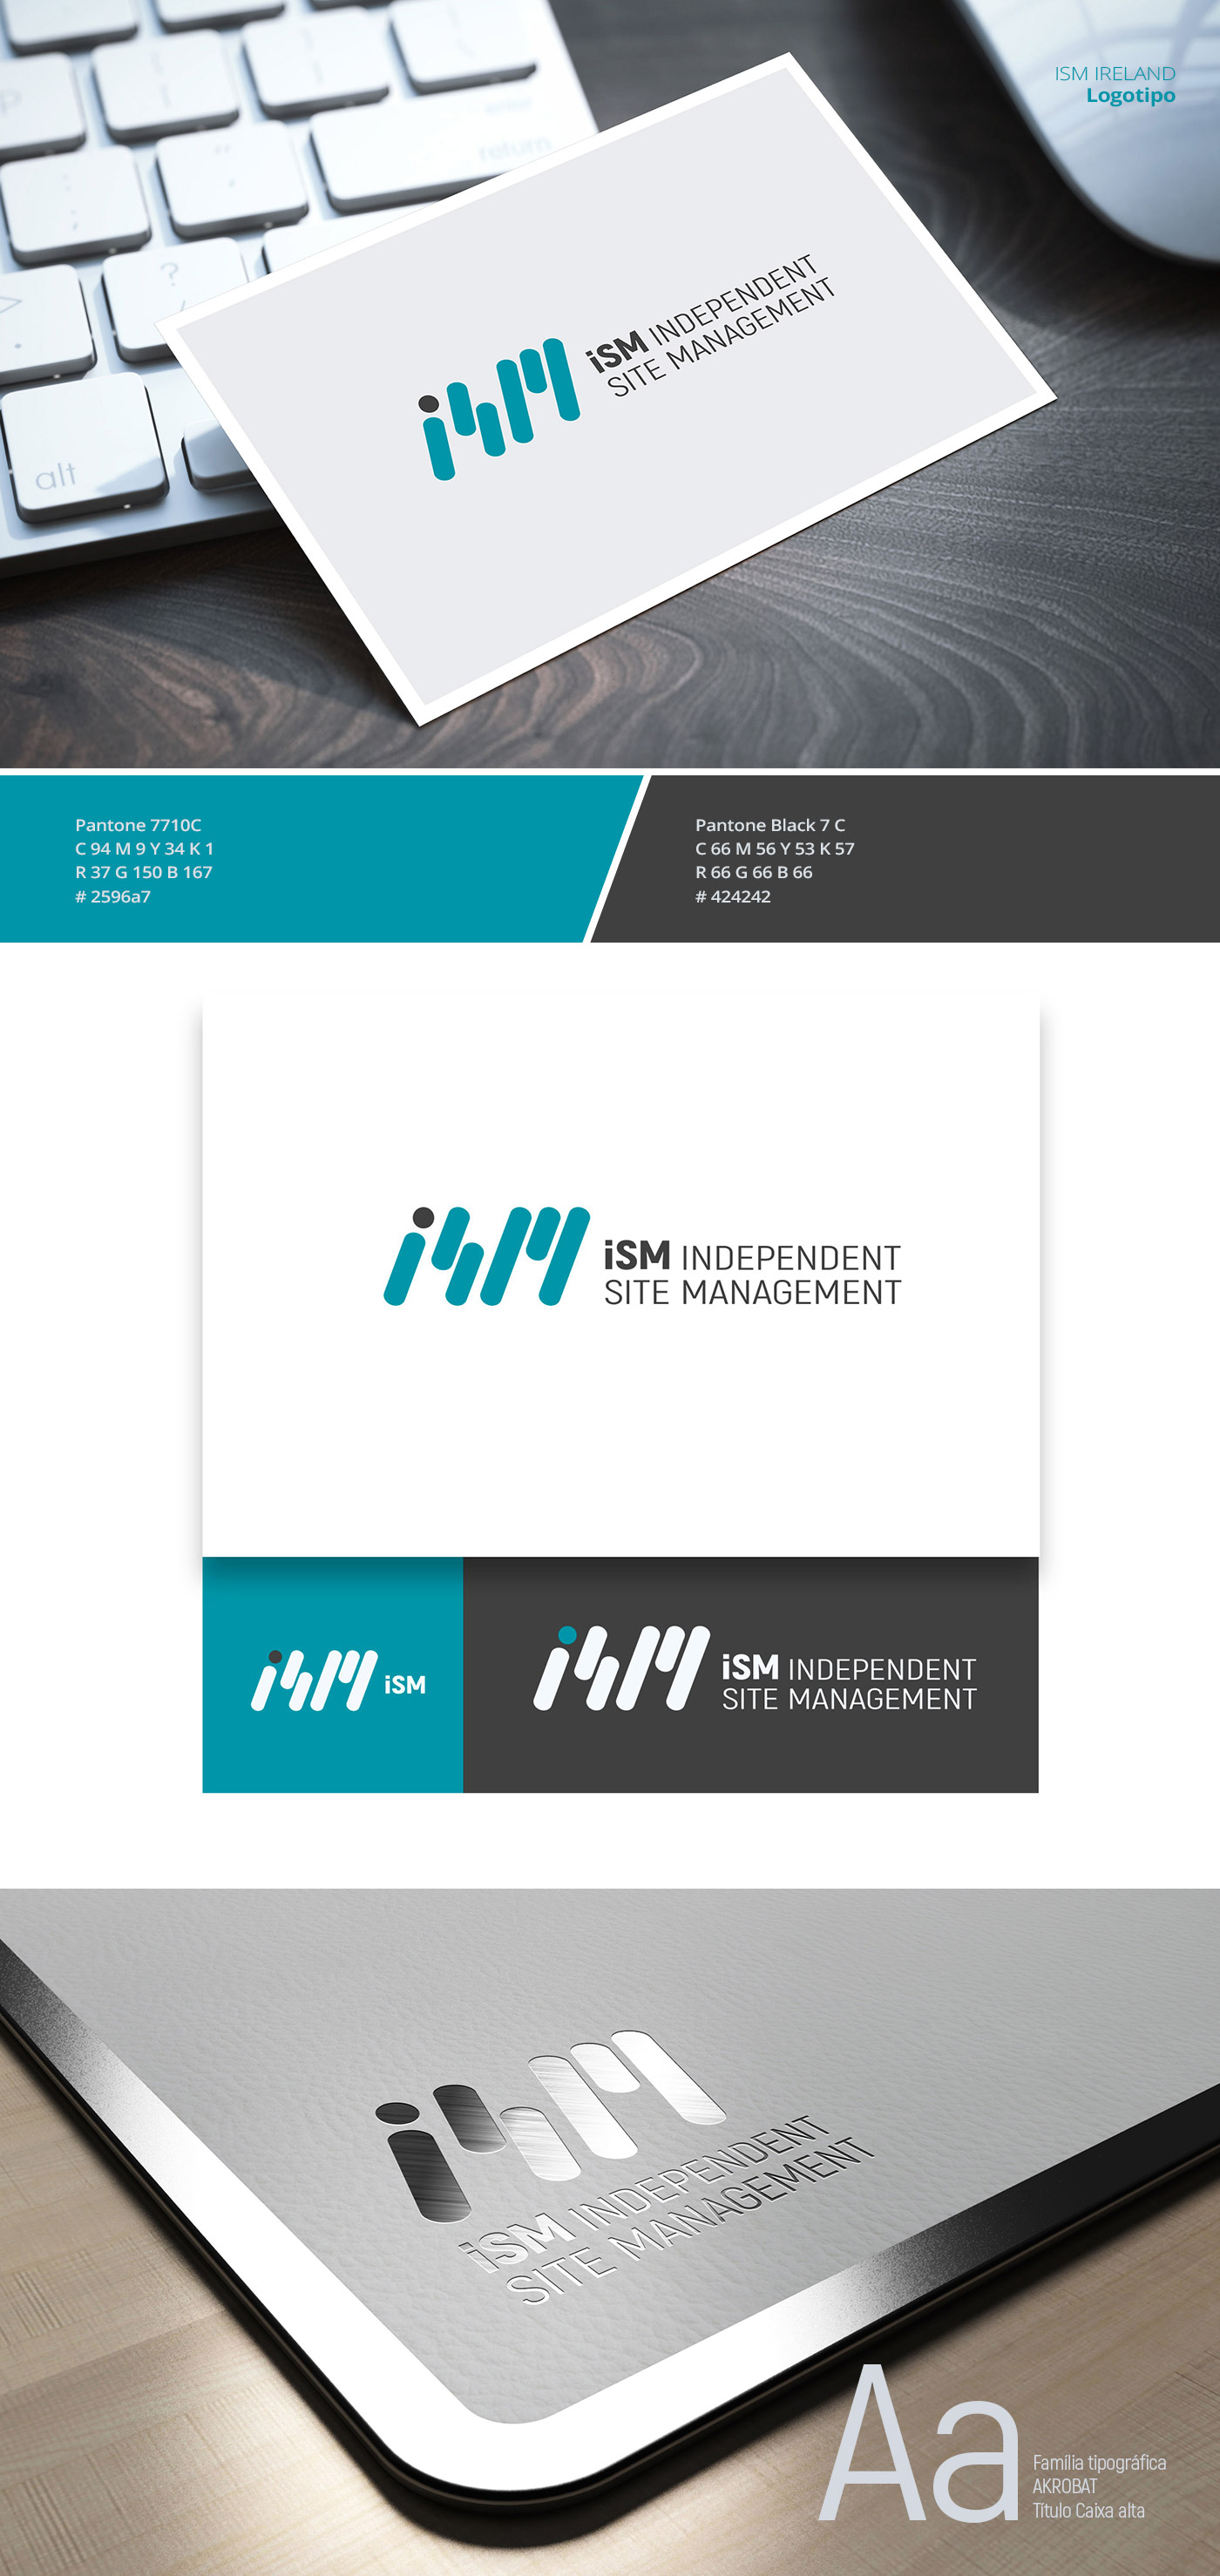 Imagem do processo e conceito criativo do Projeto da cliente ISM Ireland